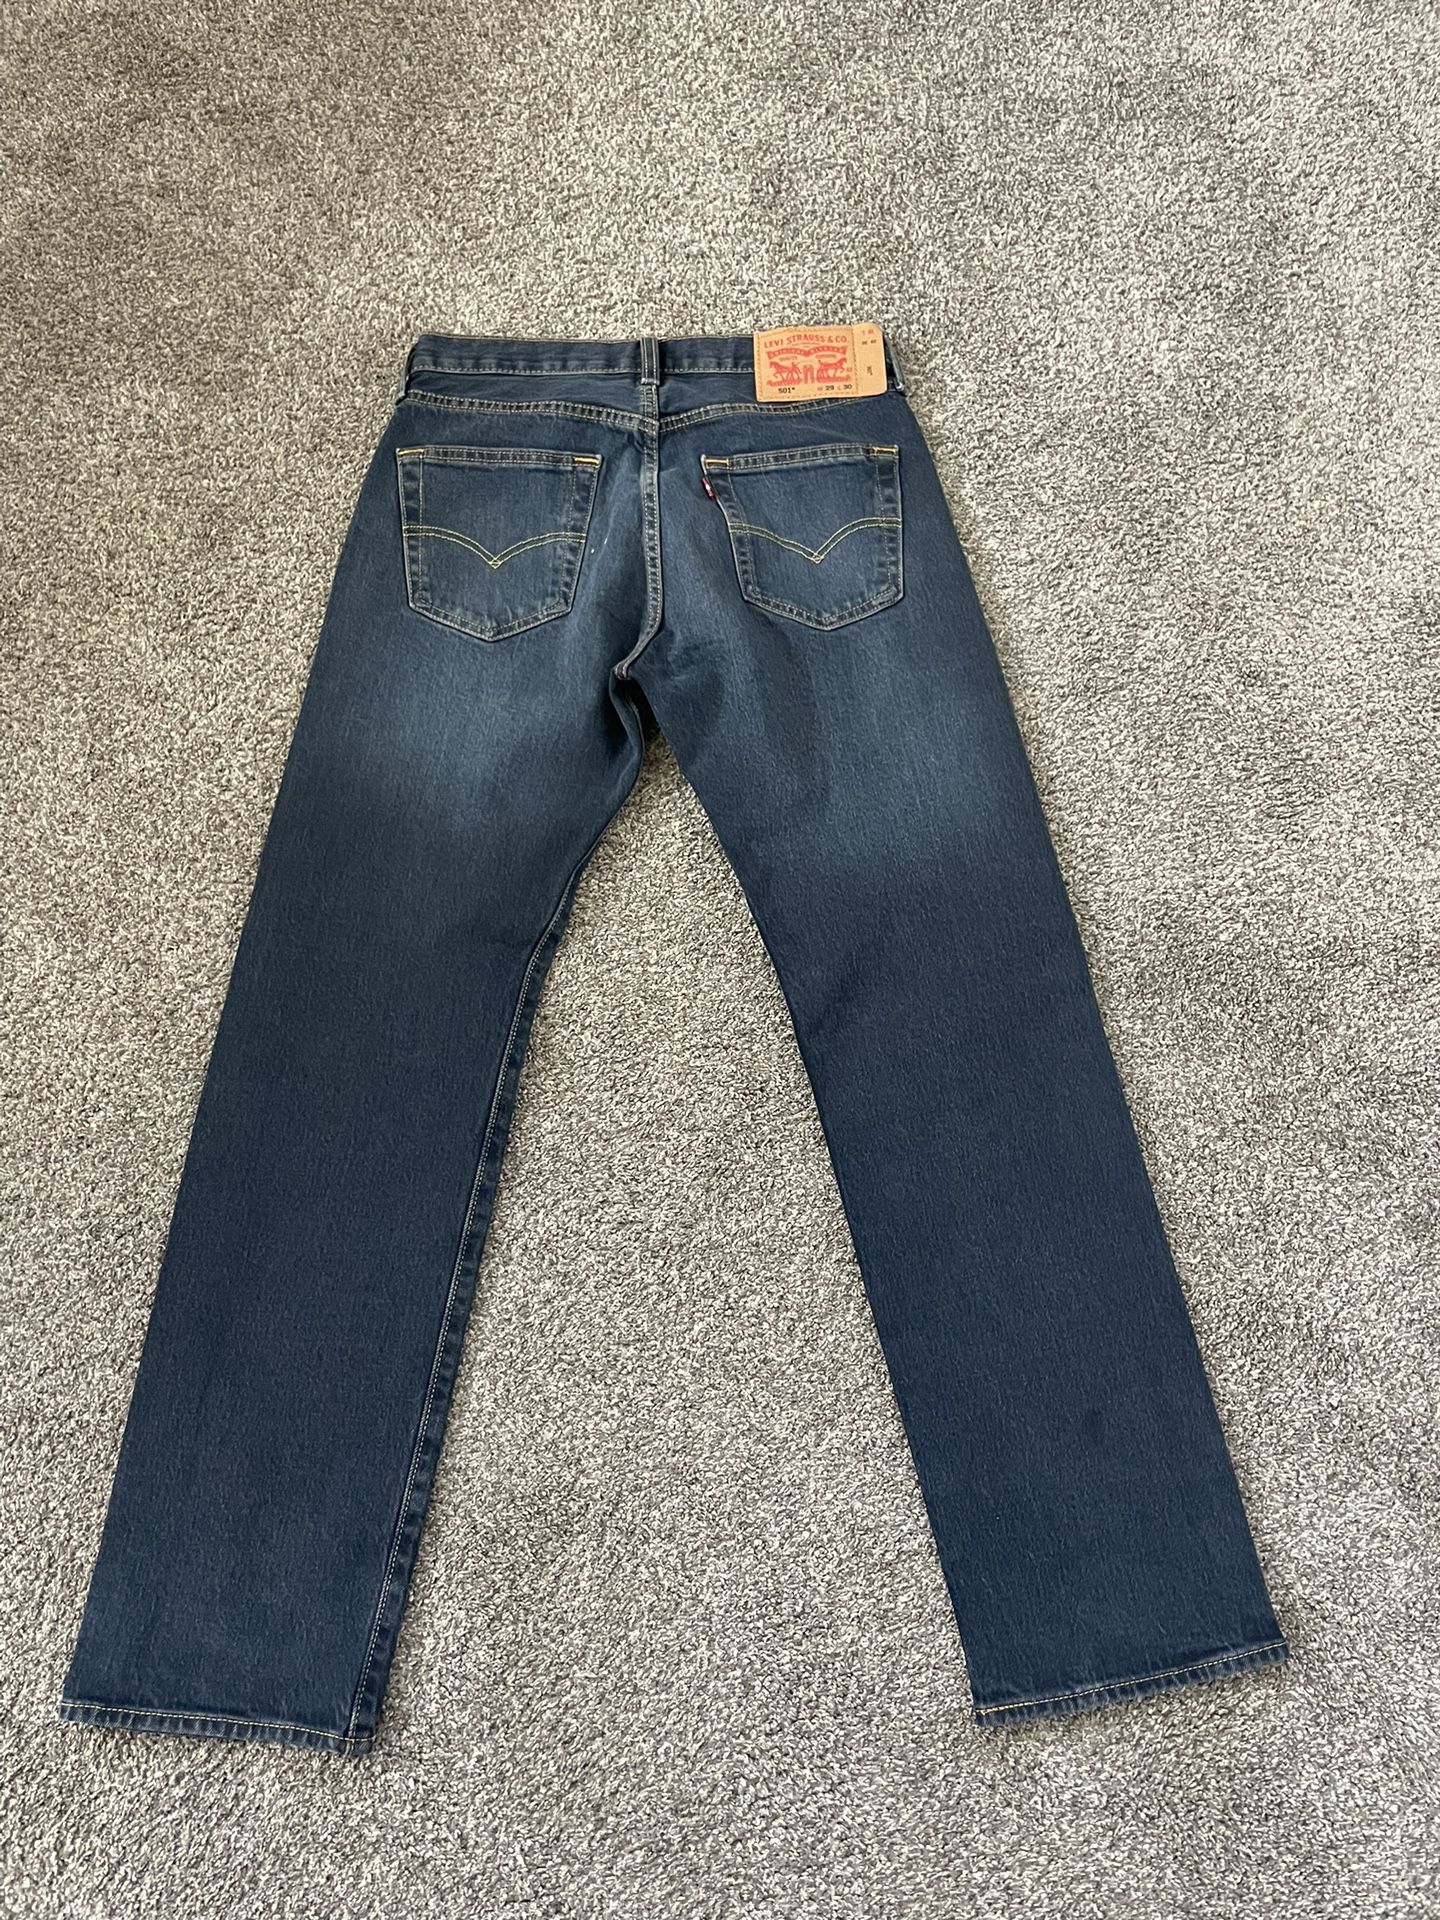 levi jeans 501